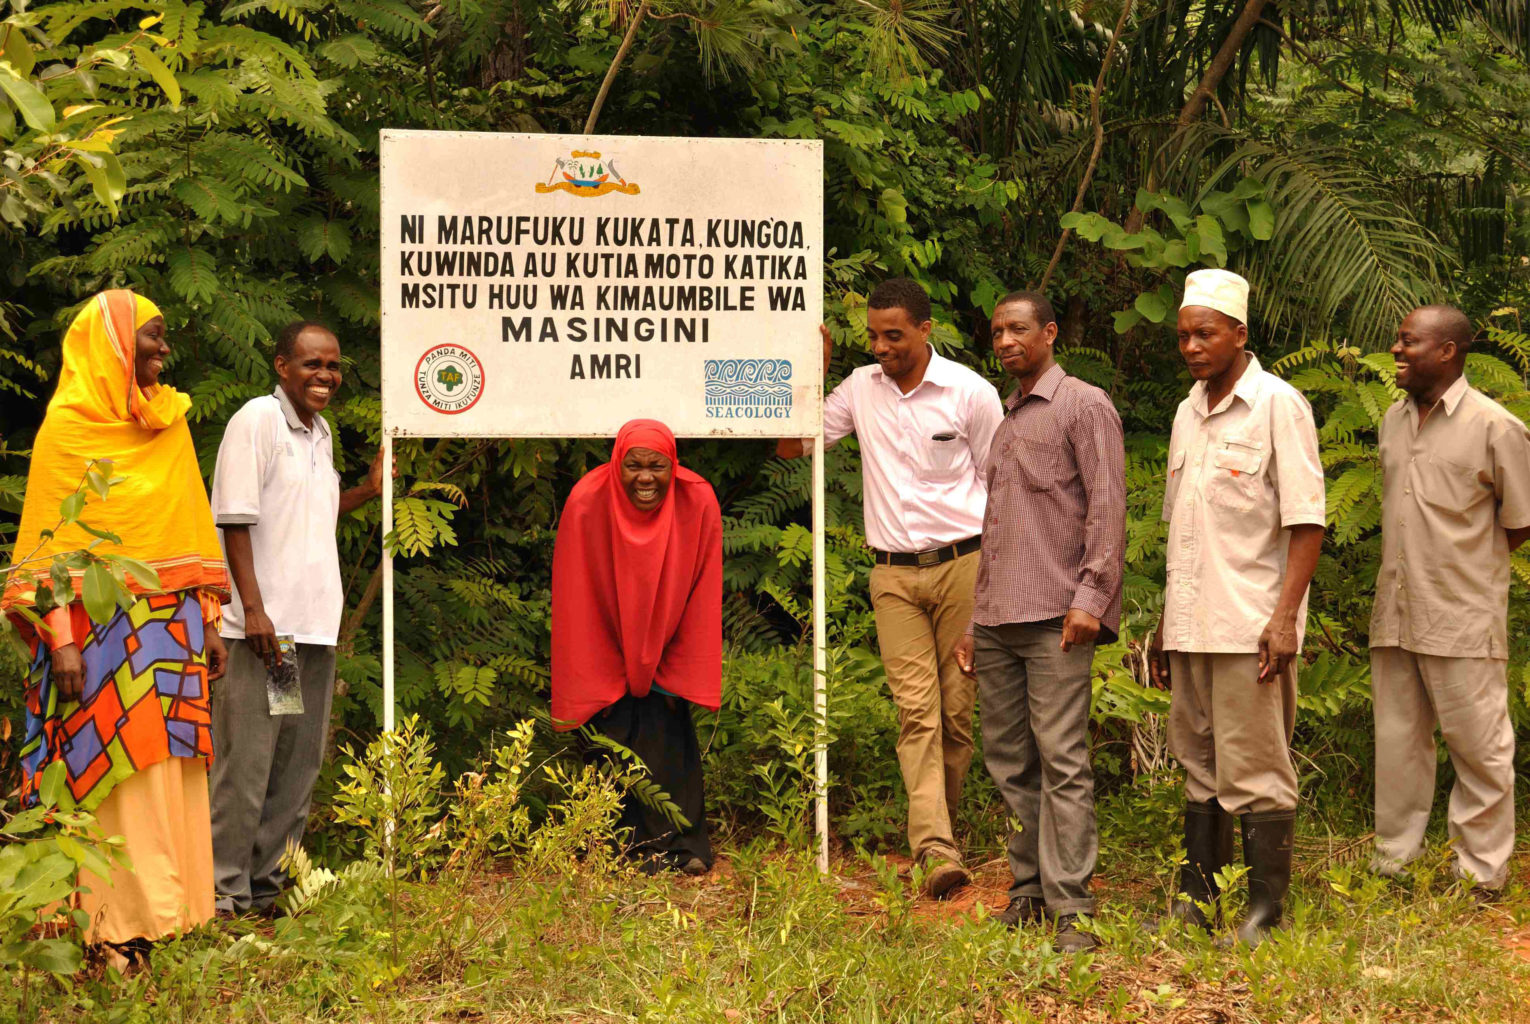 Warning signboard outside Masingini Forest